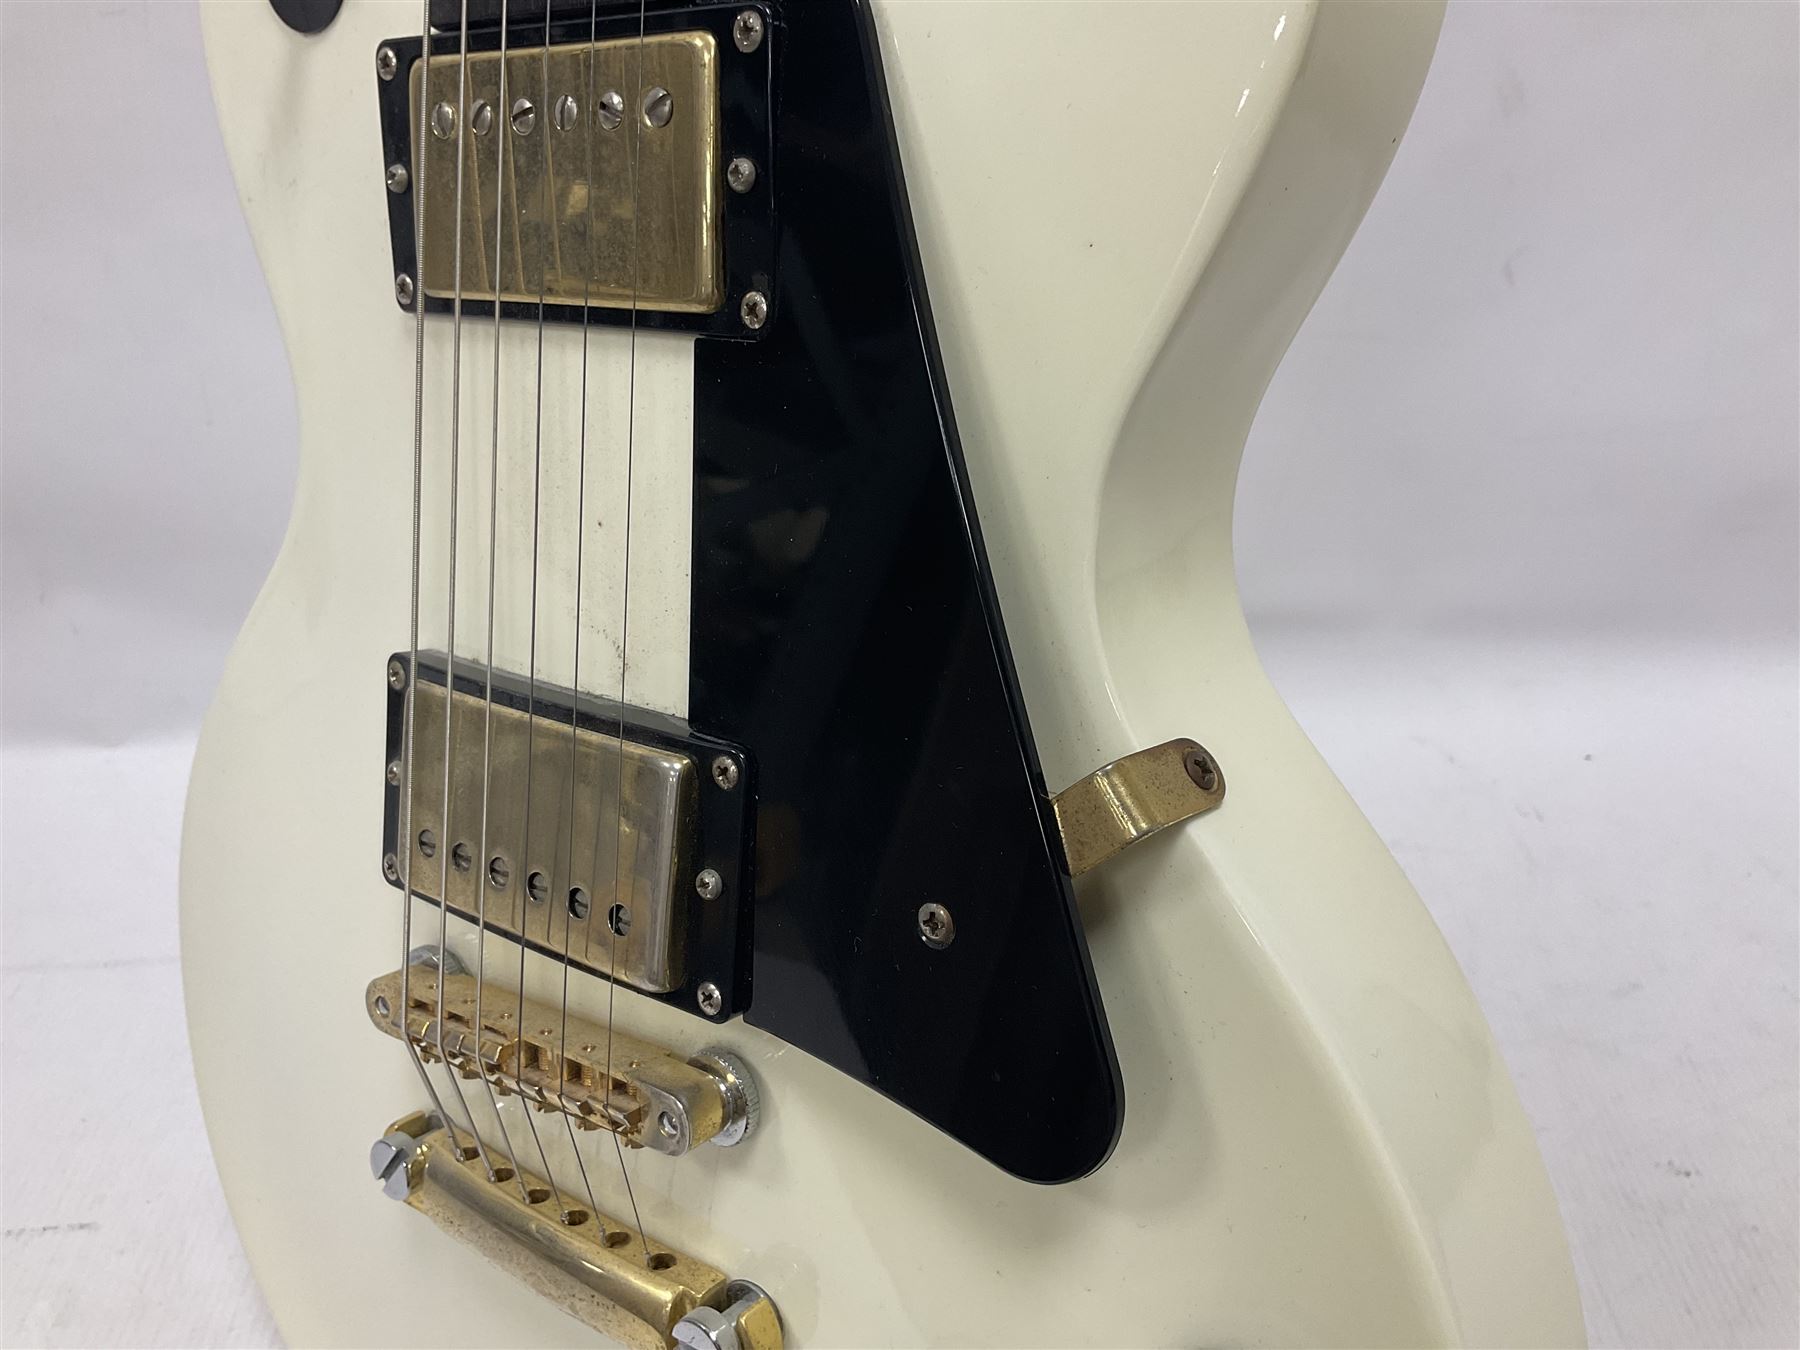 2010 Gibson Les Paul studio guitar - Image 6 of 24